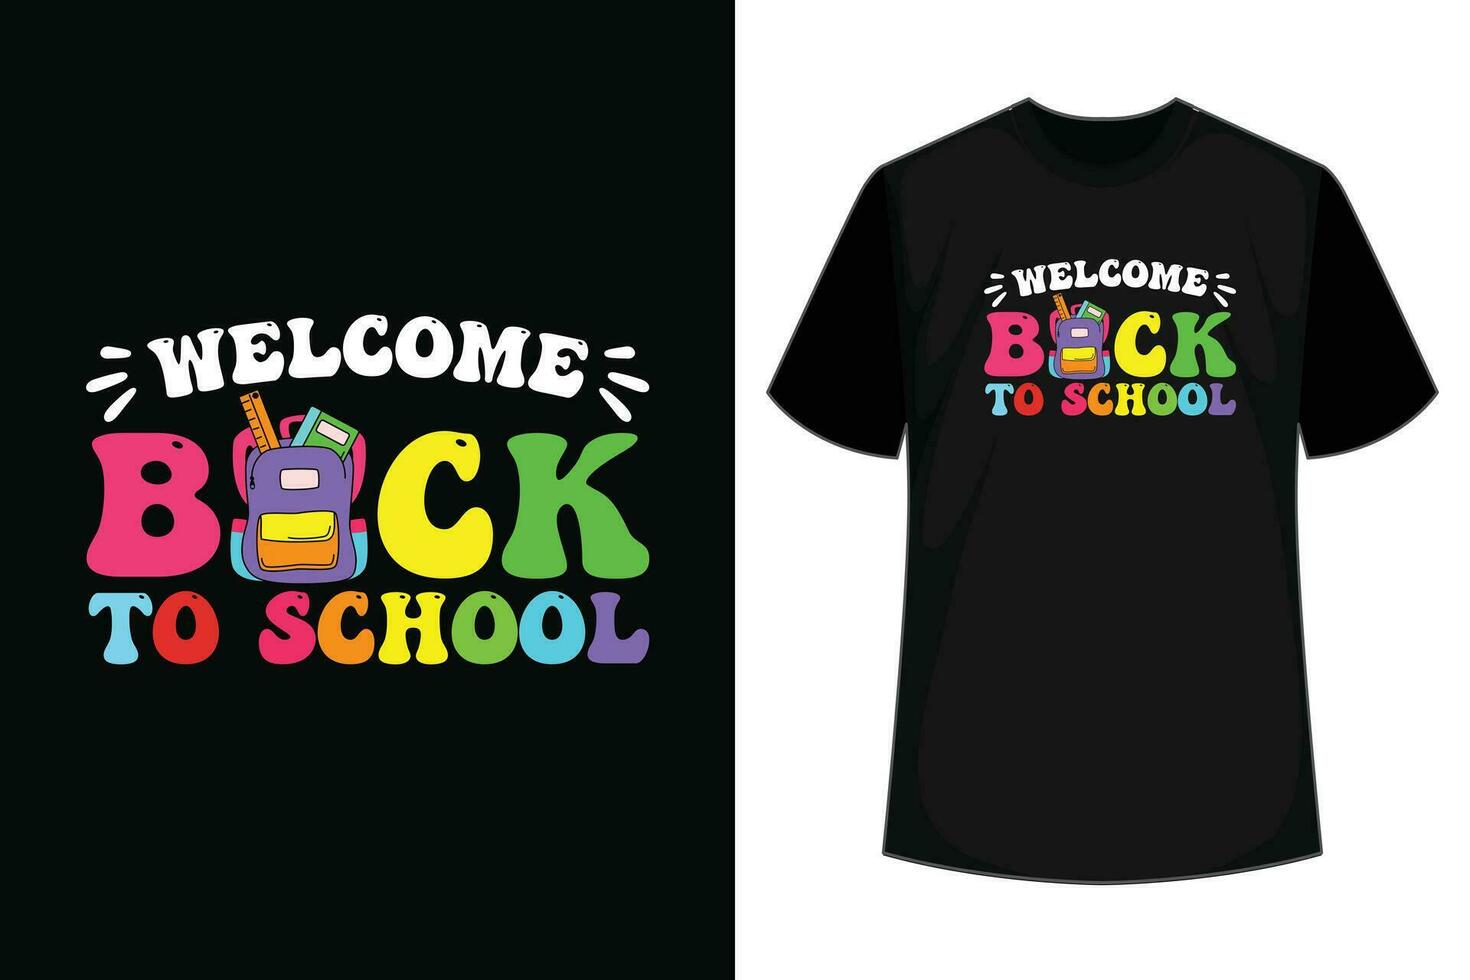 groovig herzlich willkommen zurück zu Schule zuerst Tag von Schule Lehrer Studenten T-Shirt vektor